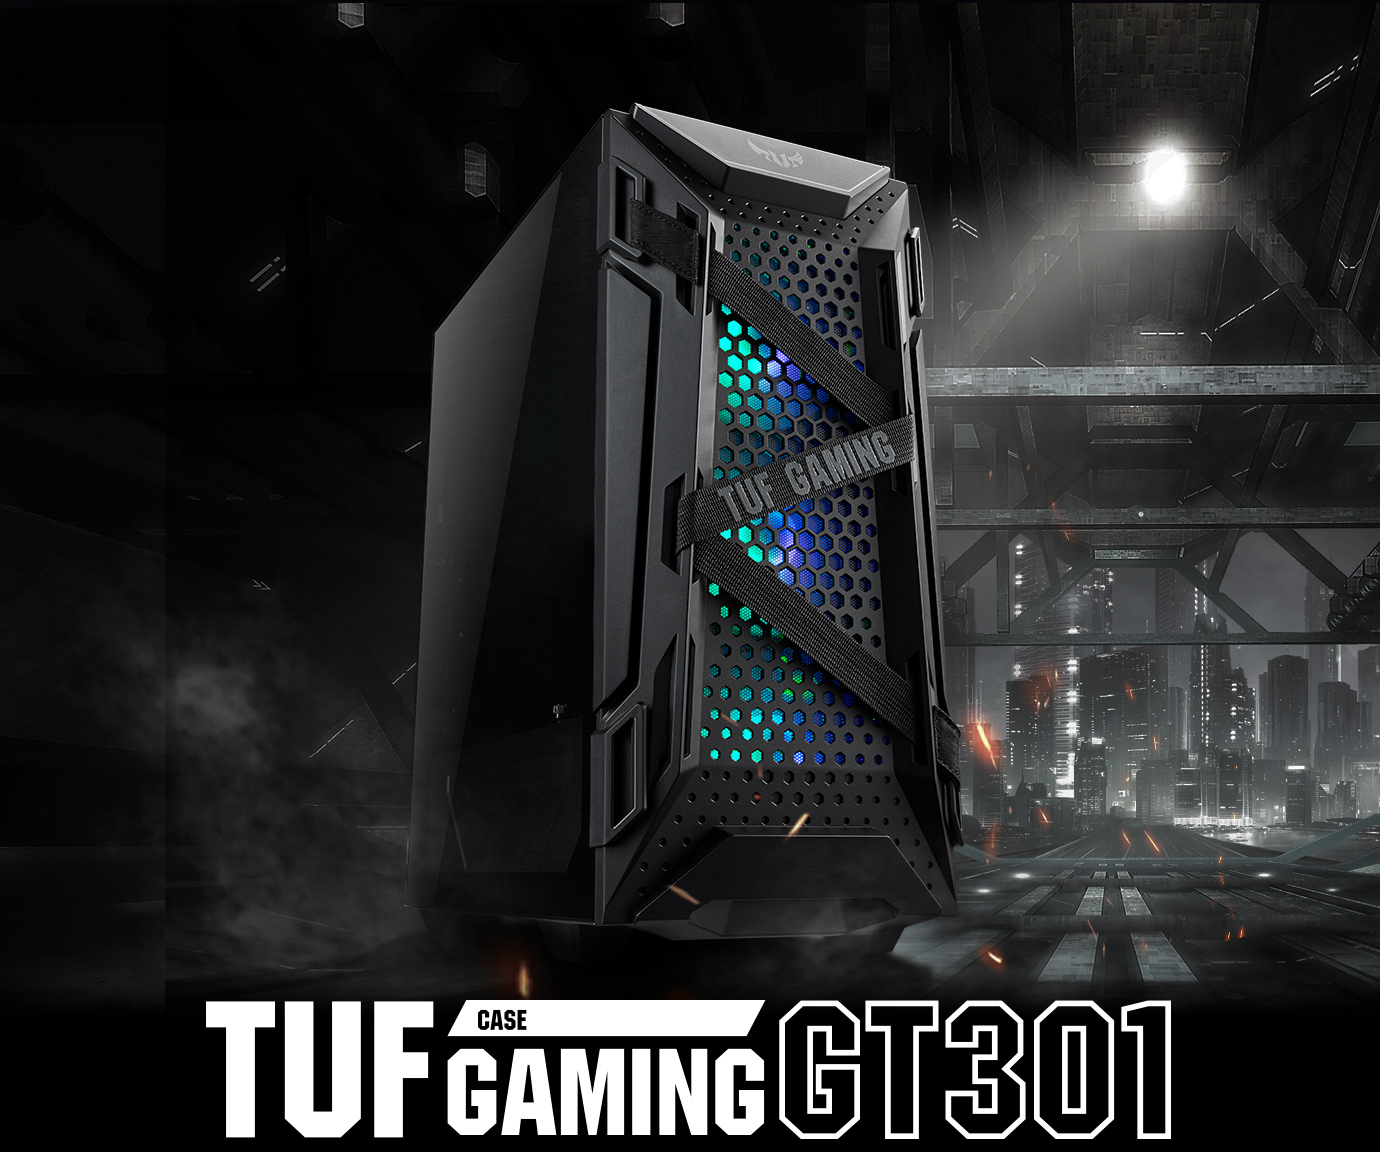 華碩 TUF Gaming GT301 電競機殼產品照片。